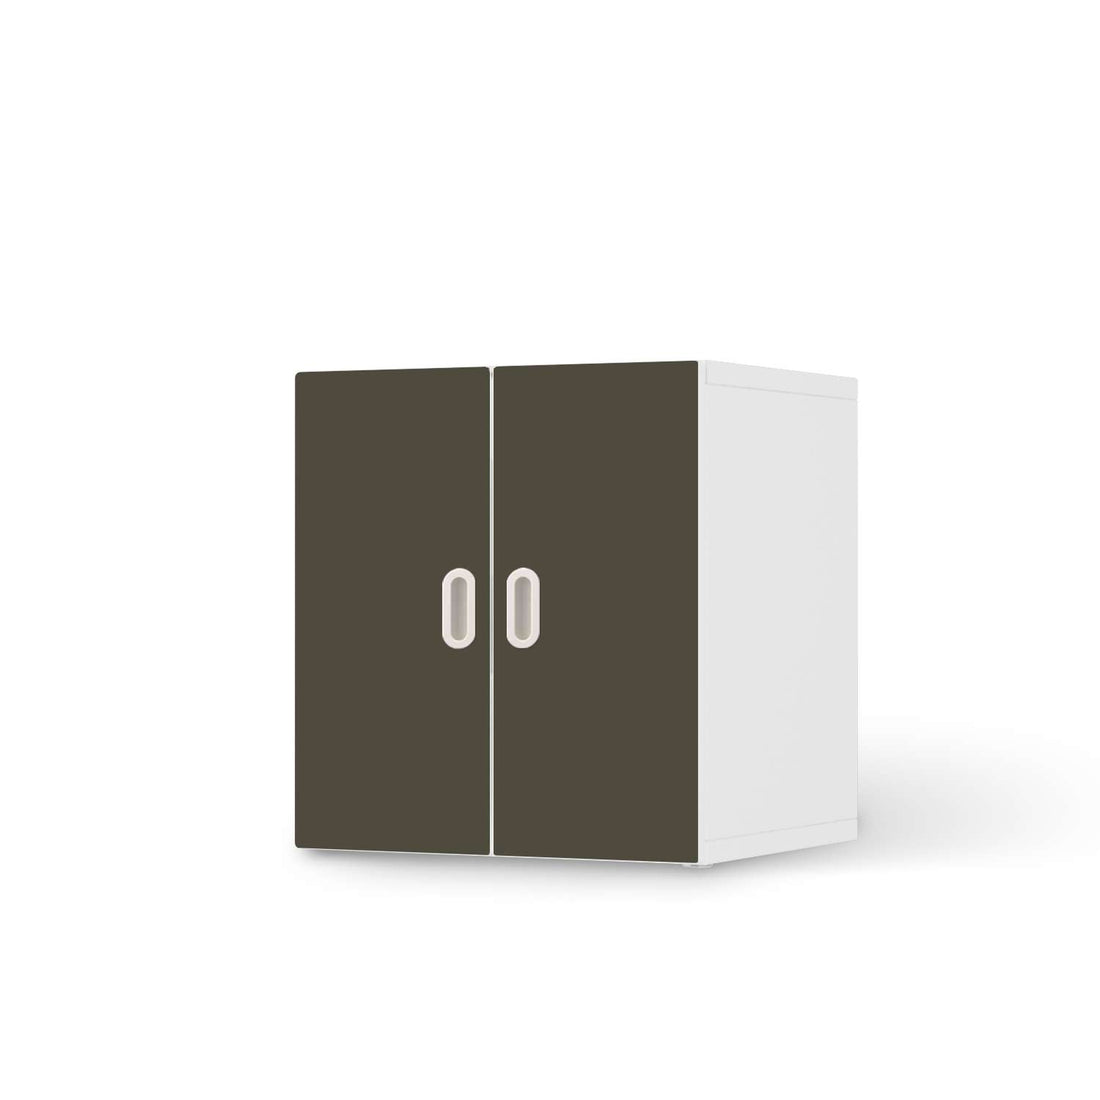 Selbstklebende Folie Braungrau Dark - IKEA Stuva / Fritids Schrank - 2 kleine Türen  - weiss